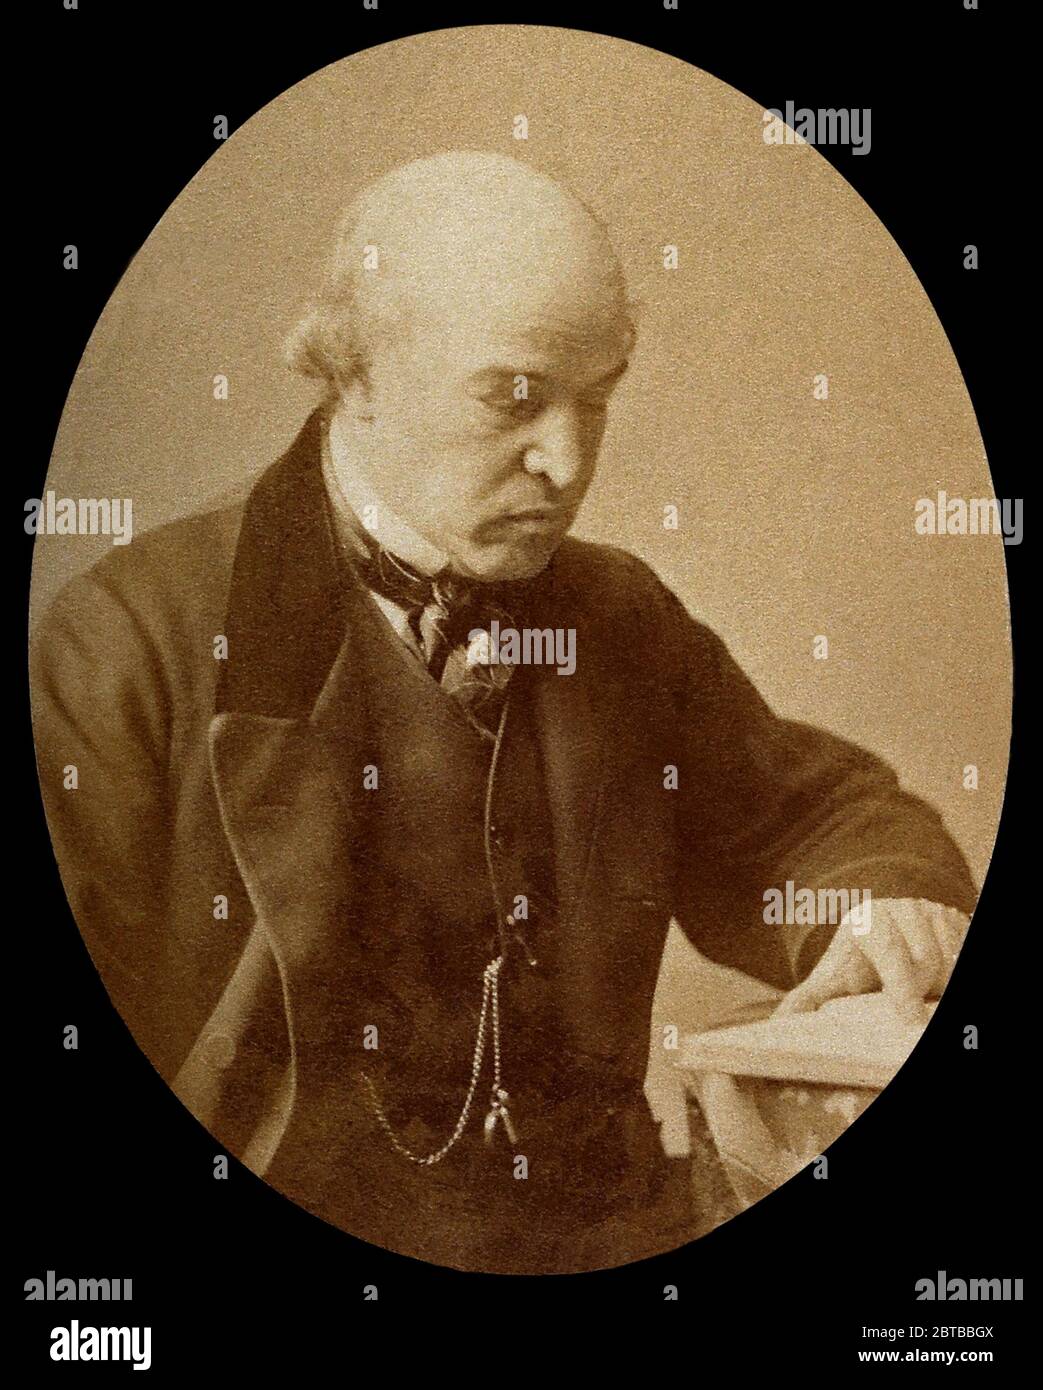 1875 ca., GROSSBRITANNIEN: Der britische Arzt und Virologe Sir WILLIAM JENNER ( 1815 - 1898 ) vor allem bekannt für die Entdeckung der Unterscheidung zwischen TYPHUS und TYPHUS . War der Leibarzt von Königin Victoria von England. - IMPFUNG - VIRUS - VIROLOGO - VIROLOGE - VACCINO - TIFO - TIFOIDE - VACCINAZIONE - fotostoriche - scienziato - Wissenschaftler - Portrait - ritratto - GRAND BRETAGNA - DOTTORE - MEDICO - MEDICINA - Medizin - SCIENZA - WISSENSCHAFT - SCIENZIATO - cravatta - Krawatte -- - Archivio GBB Stockfoto